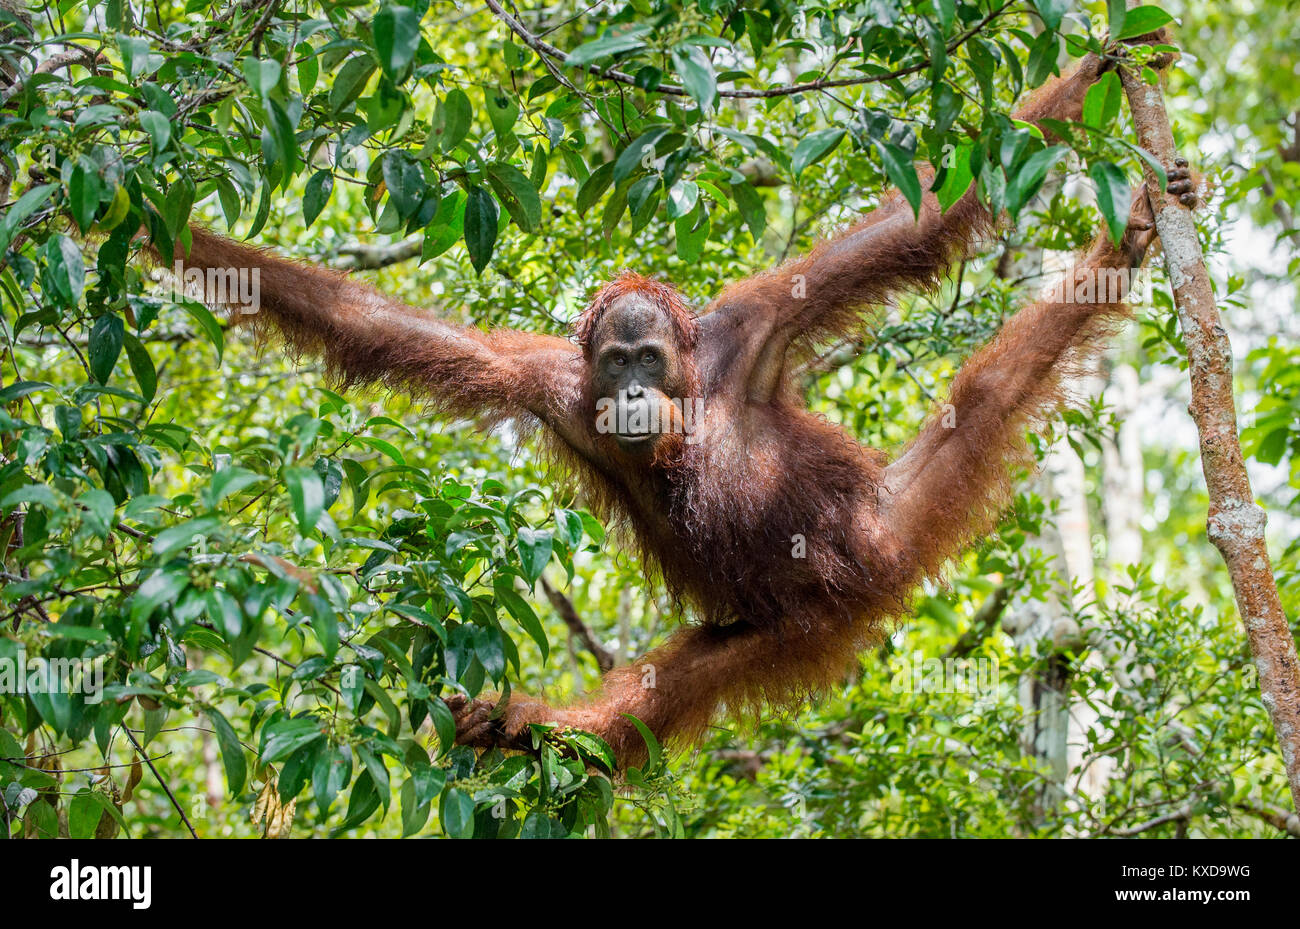 Great Ape auf dem Baum. Zentrale bornesischen Orang-utan (Pongo pygmaeus wurmbii) im natürlichen Lebensraum. Wilde Natur im tropischen Regenwald von Borneo. Stockfoto